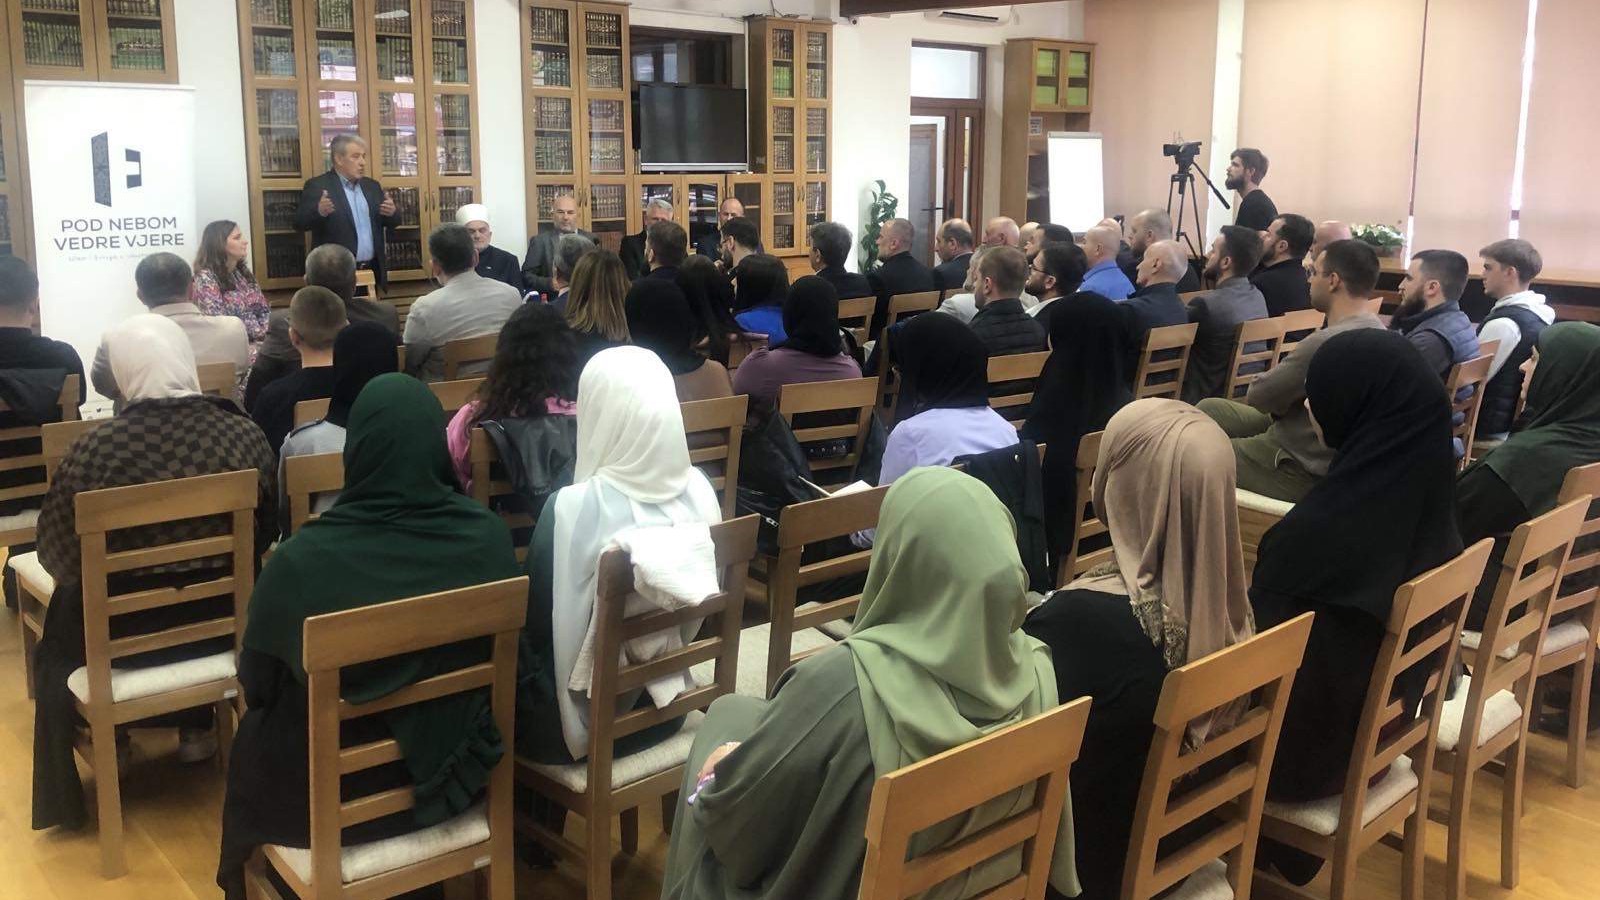 Projekat "Pod nebom vedre vjere - Islam i Evropa u iskustvu Bosne" predstavljen u Novom Pazaru